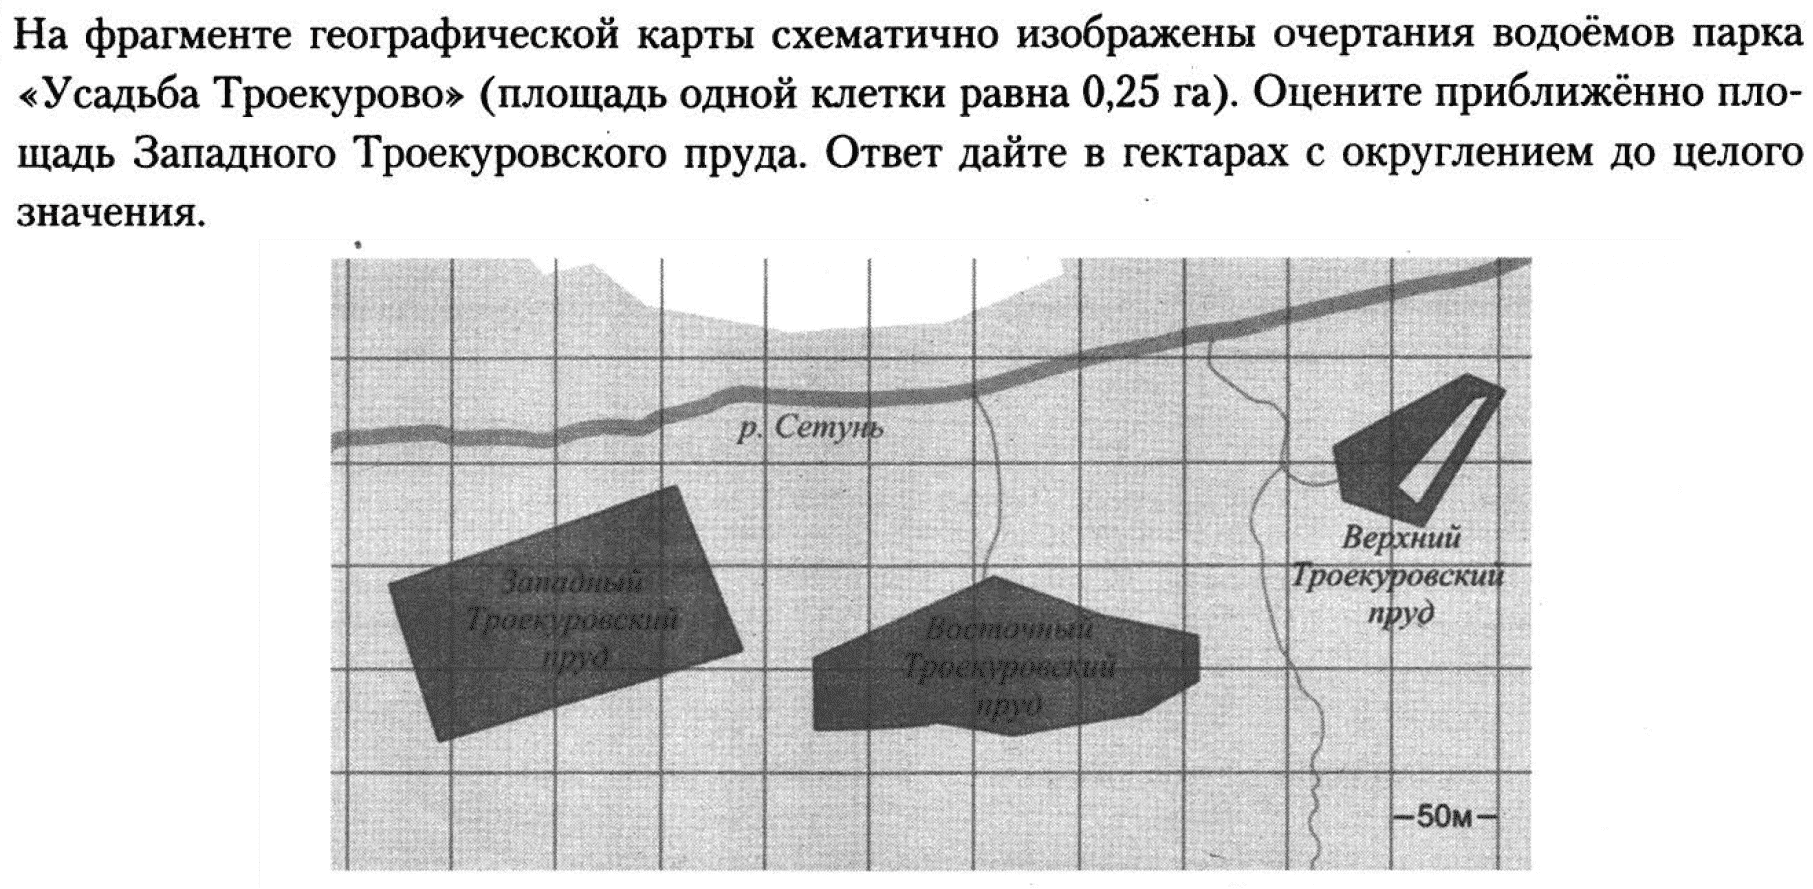 Оцените приближенно площадь западного троекуровского пруда